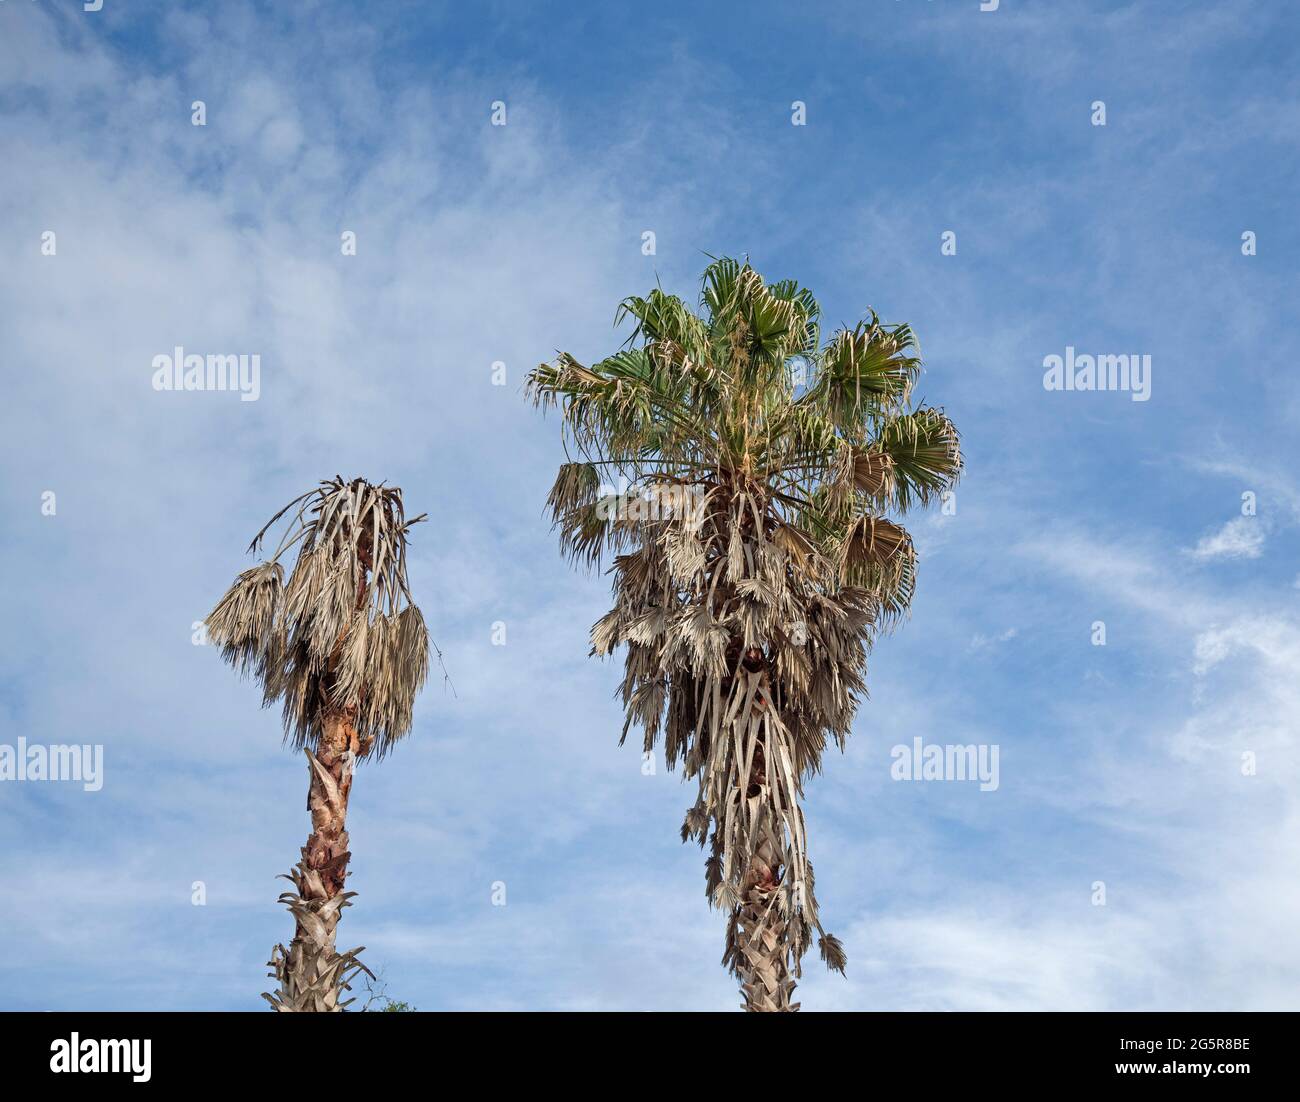 Sabal-Palmen in Alachua, Florida, leiden unter der Lethal Bronzing-Krankheit. Stockfoto